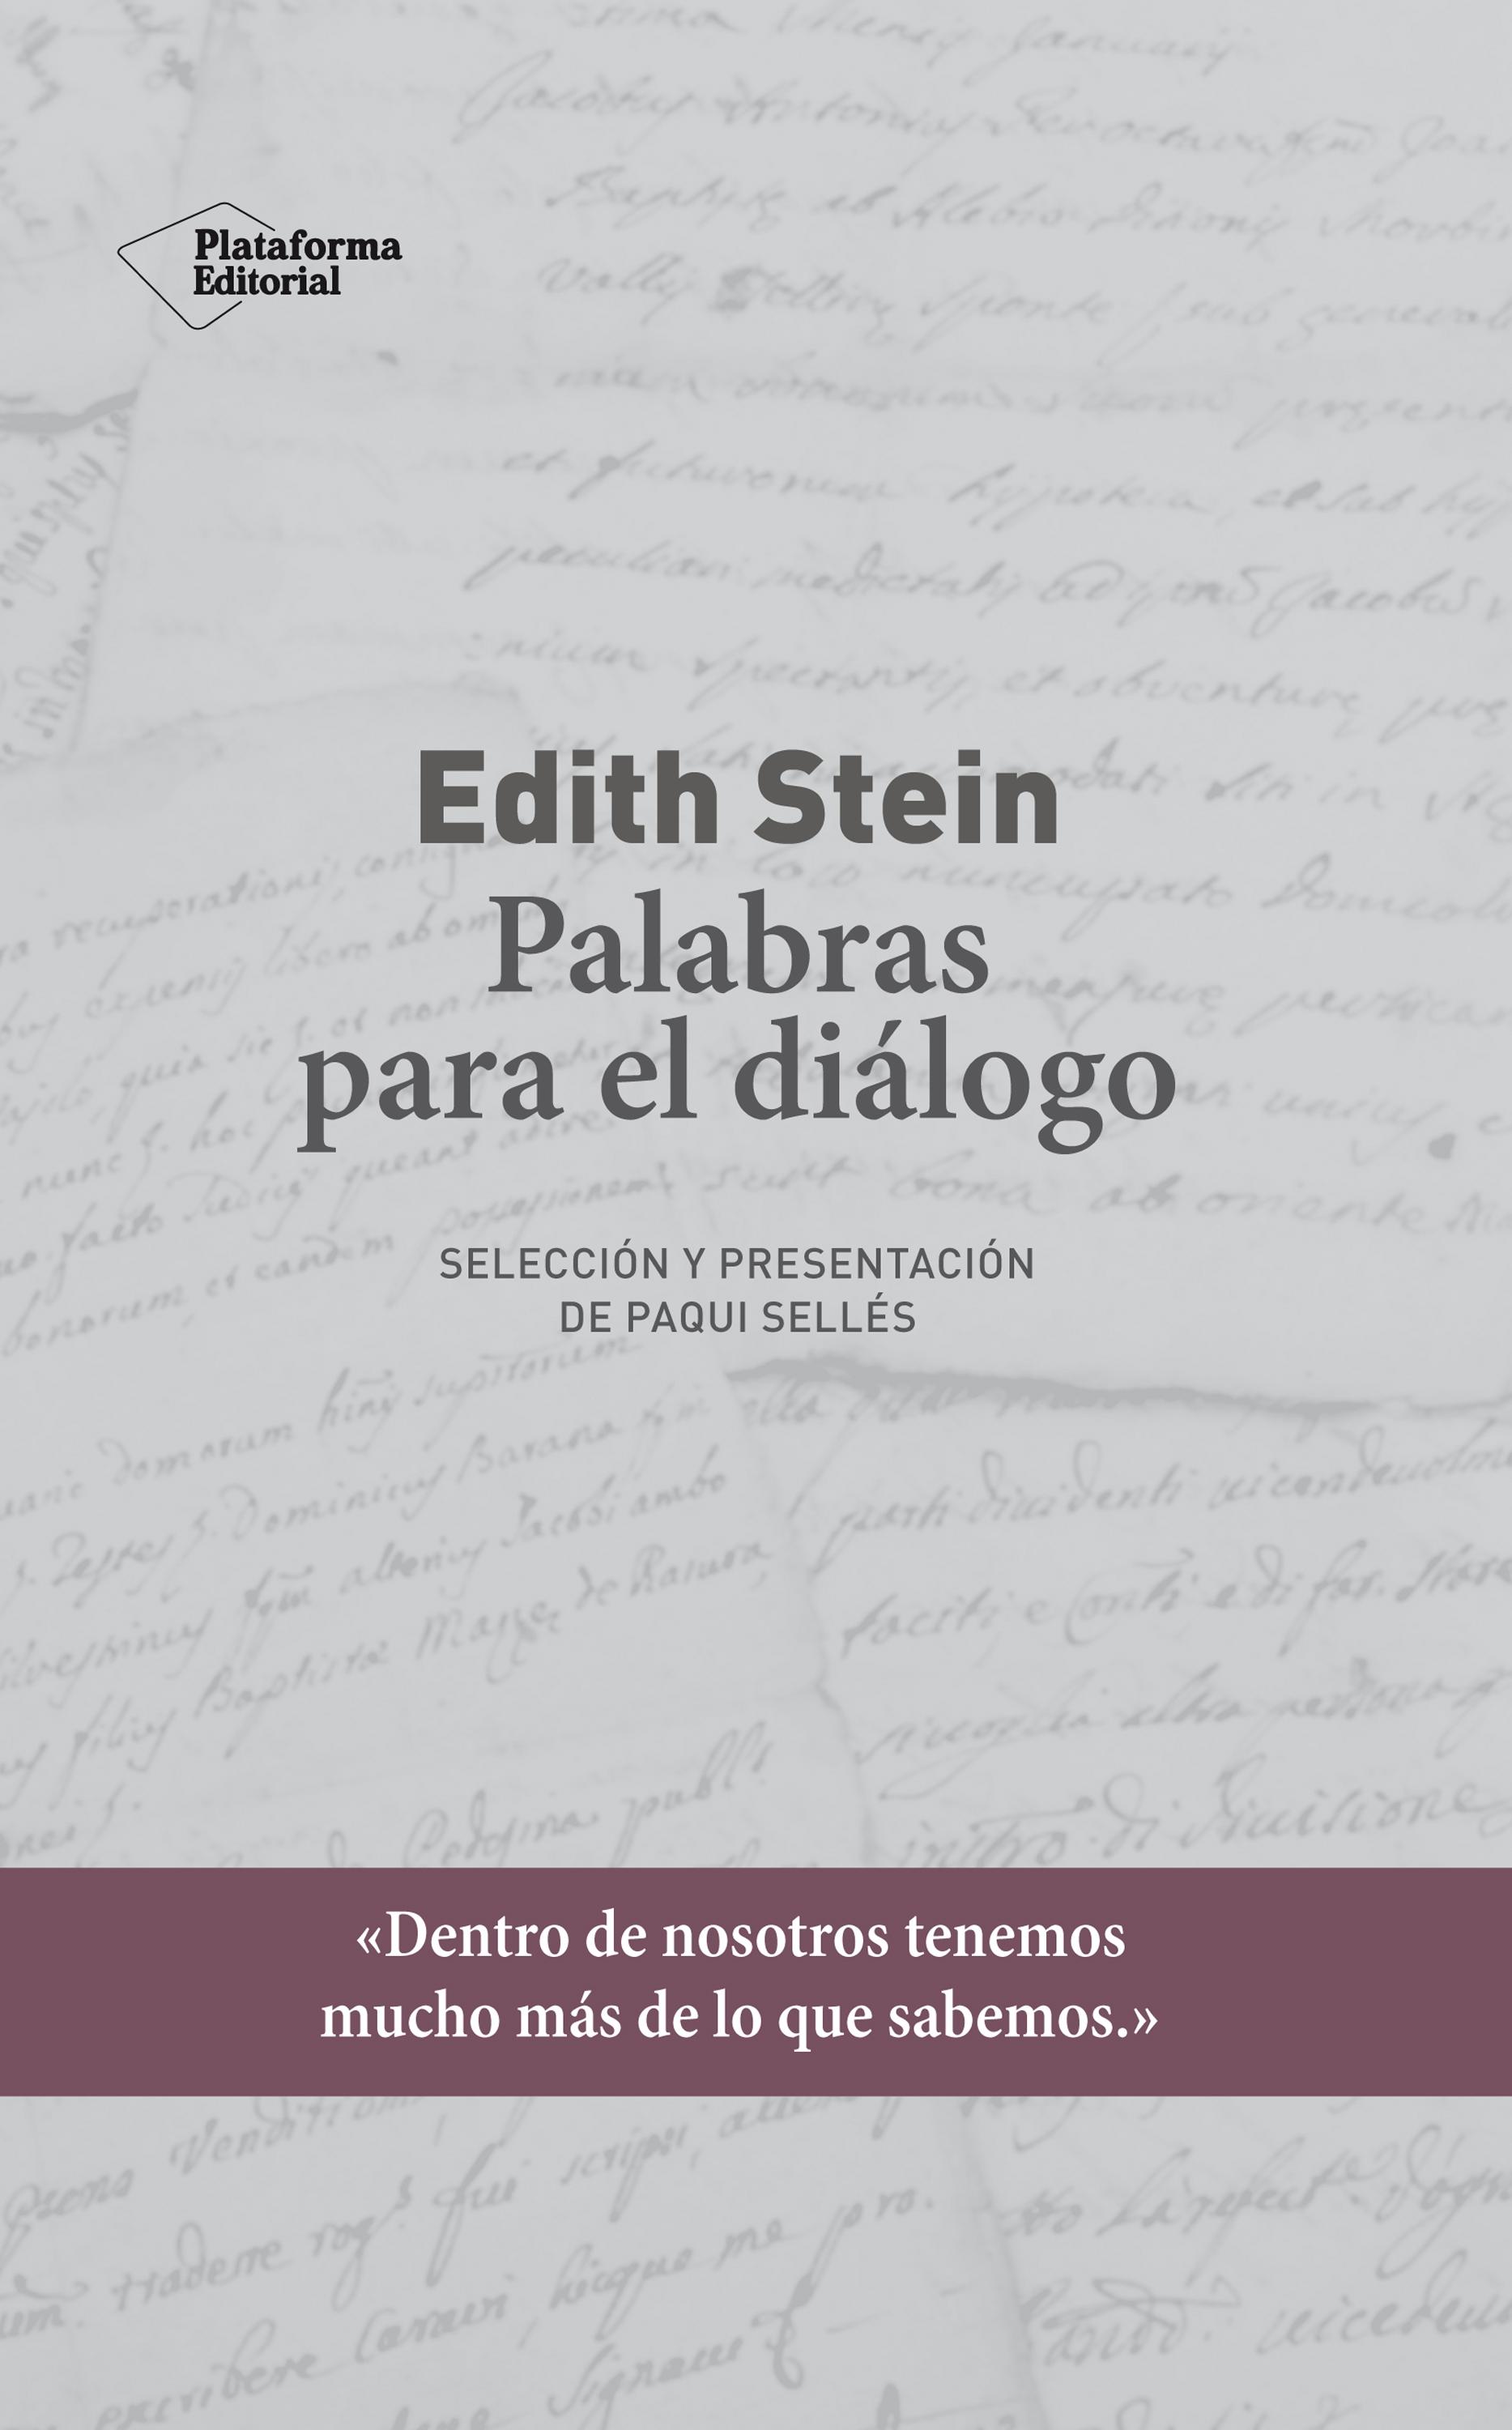 Edith Stein. Palabras para el diálogo "Selección y presentación de Paqui Sellés". 